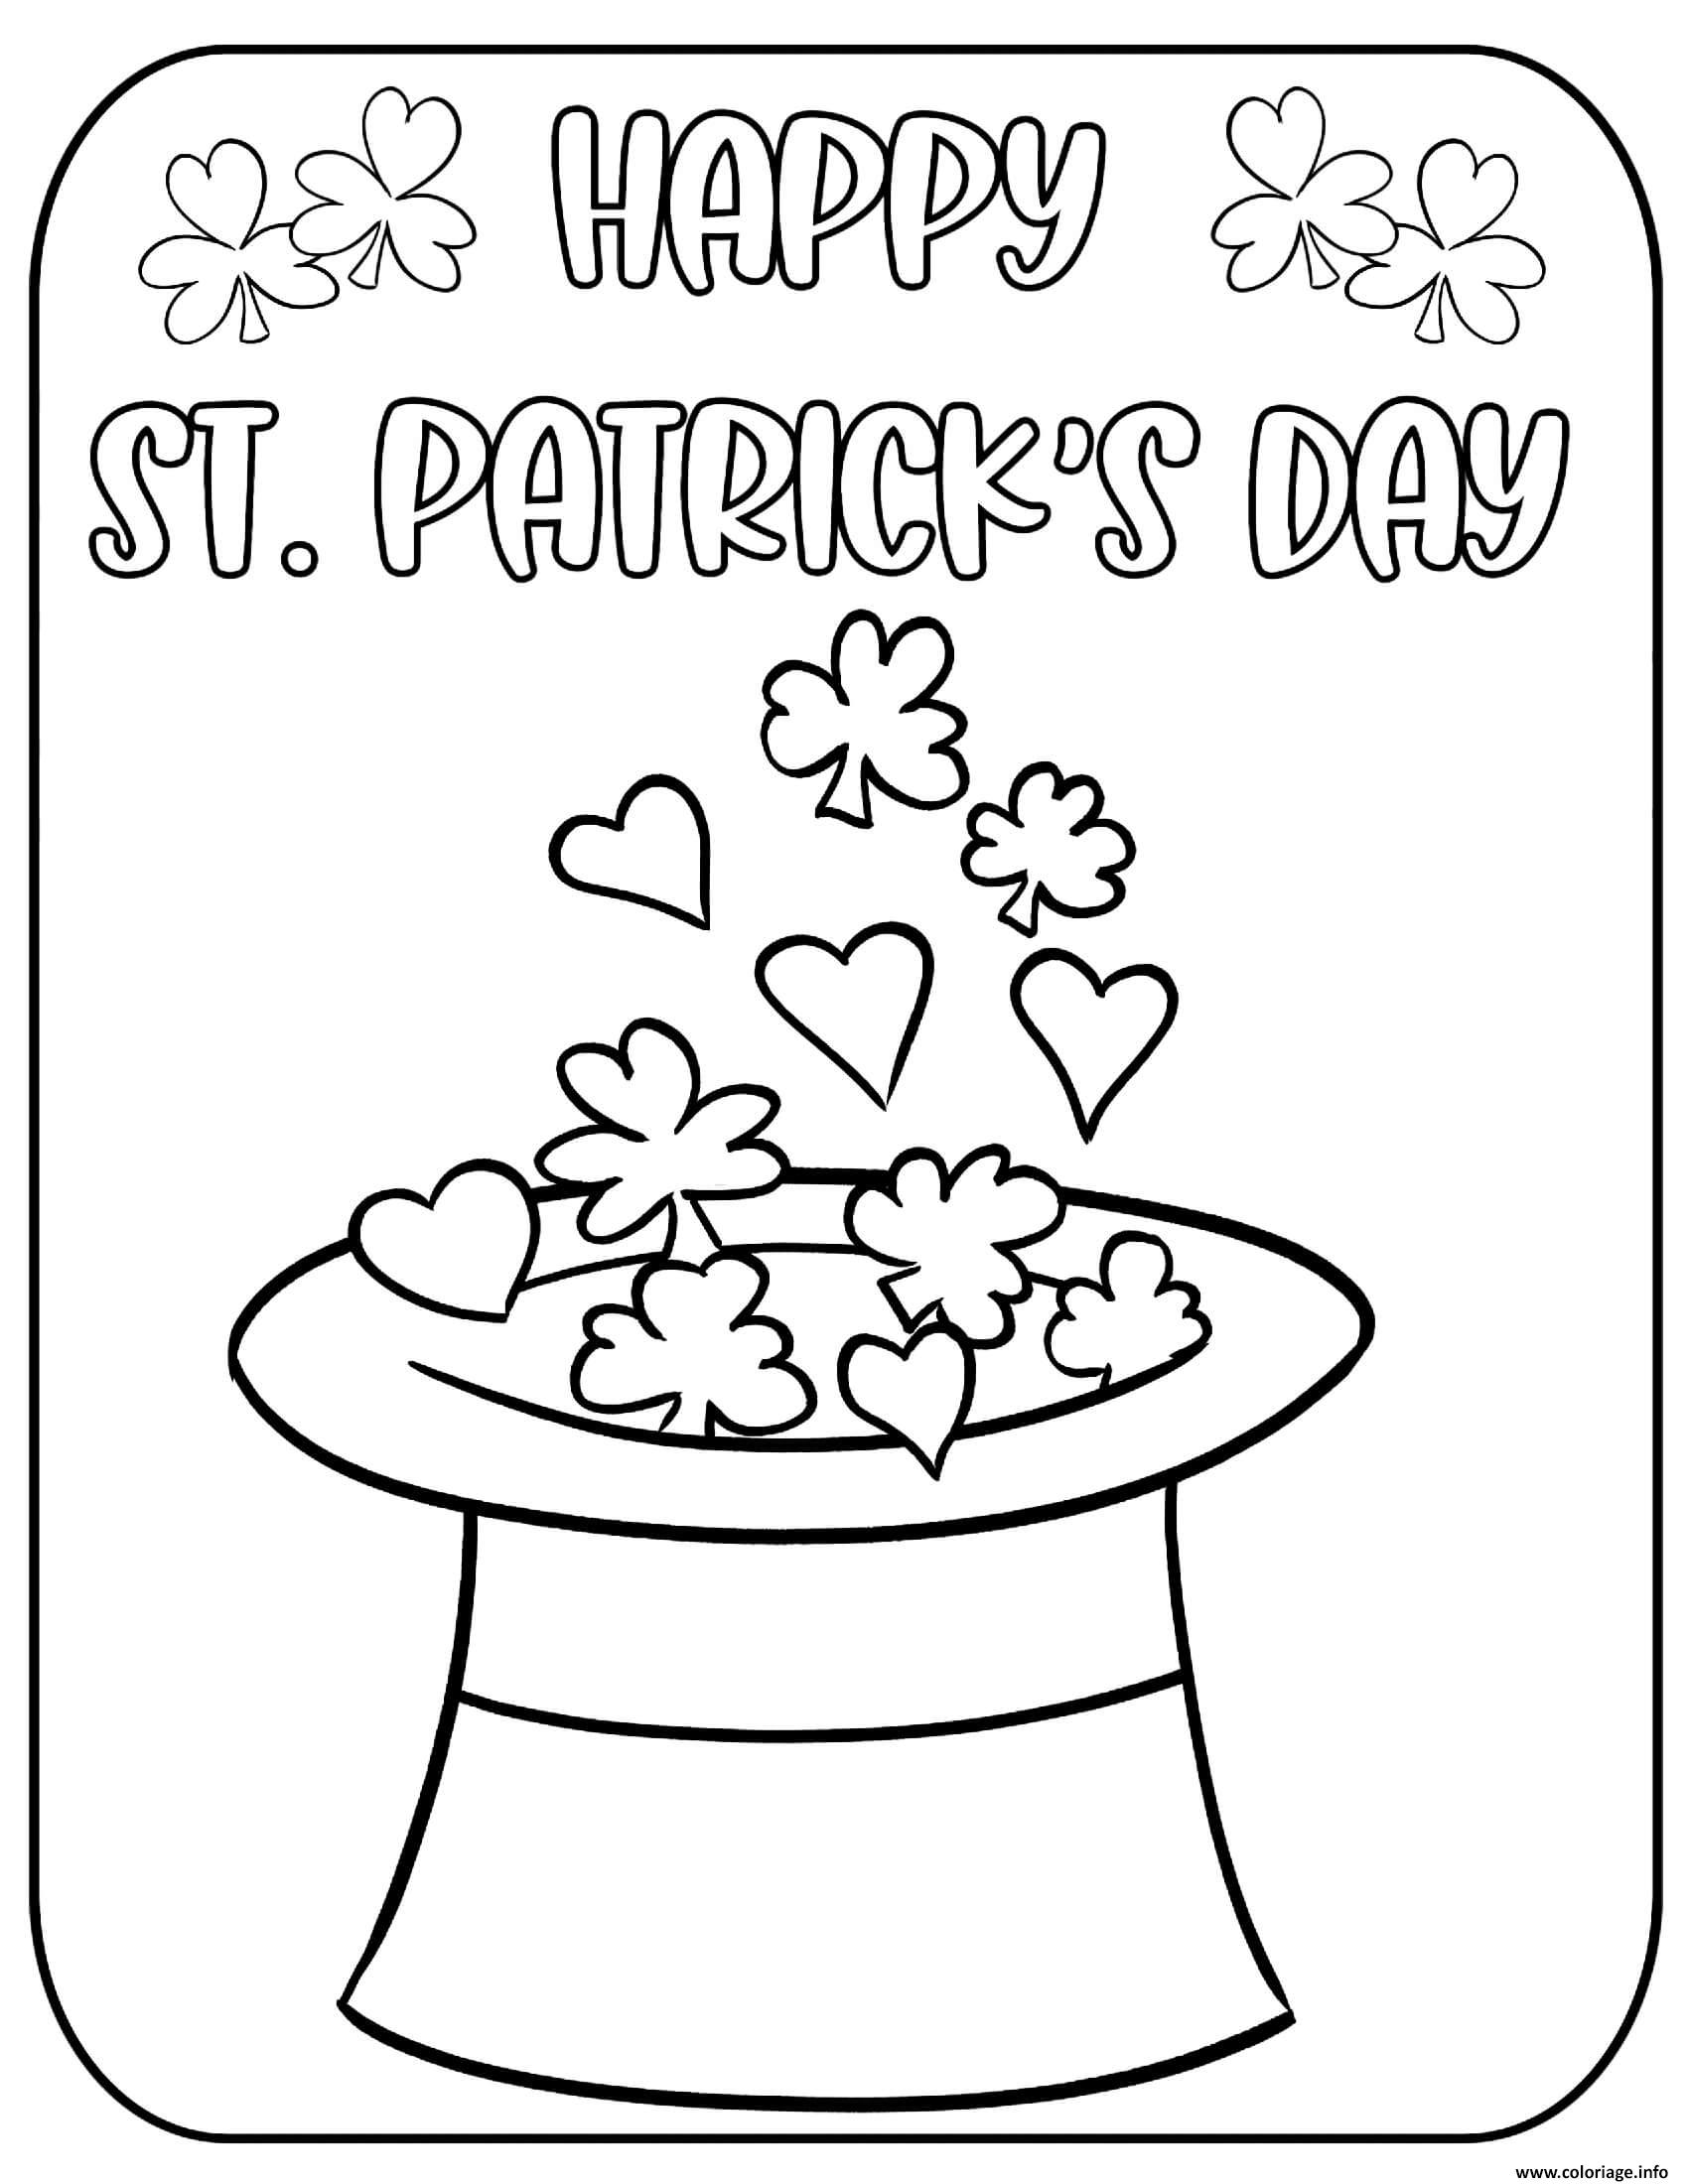 Dessin la saint patrick en irlande celebree durant cinq jours Coloriage Gratuit à Imprimer